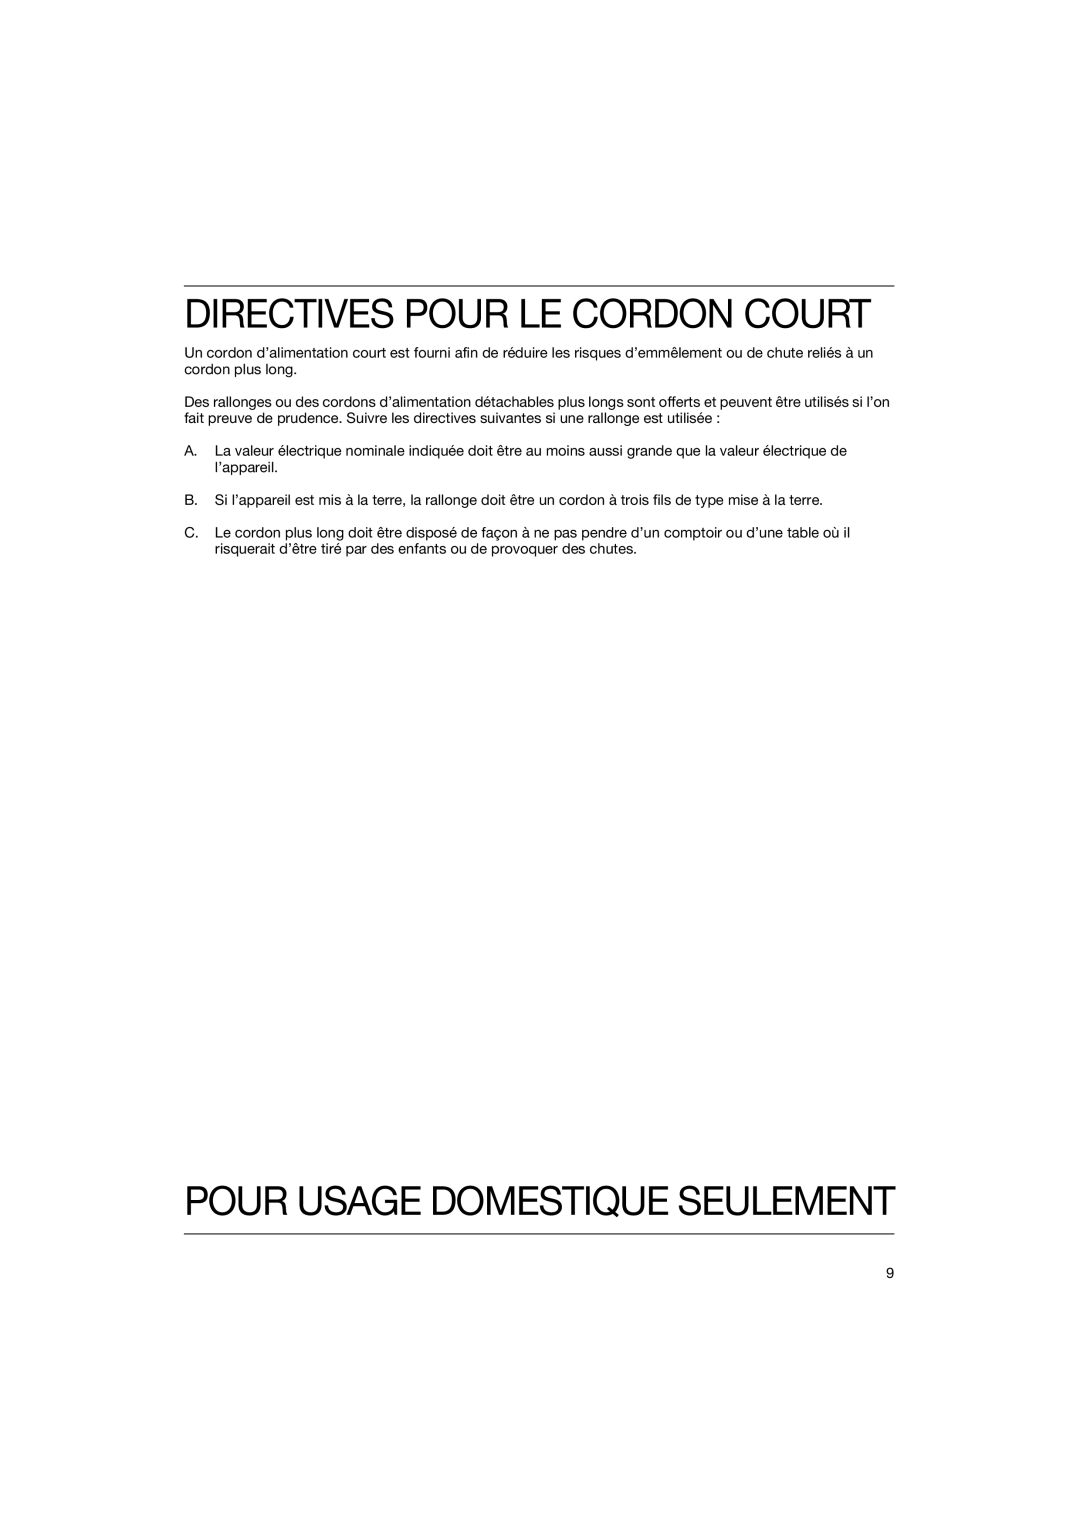 Braun 4118 manual Directives Pour Le Cordon Court, Pour Usage Domestique Seulement 